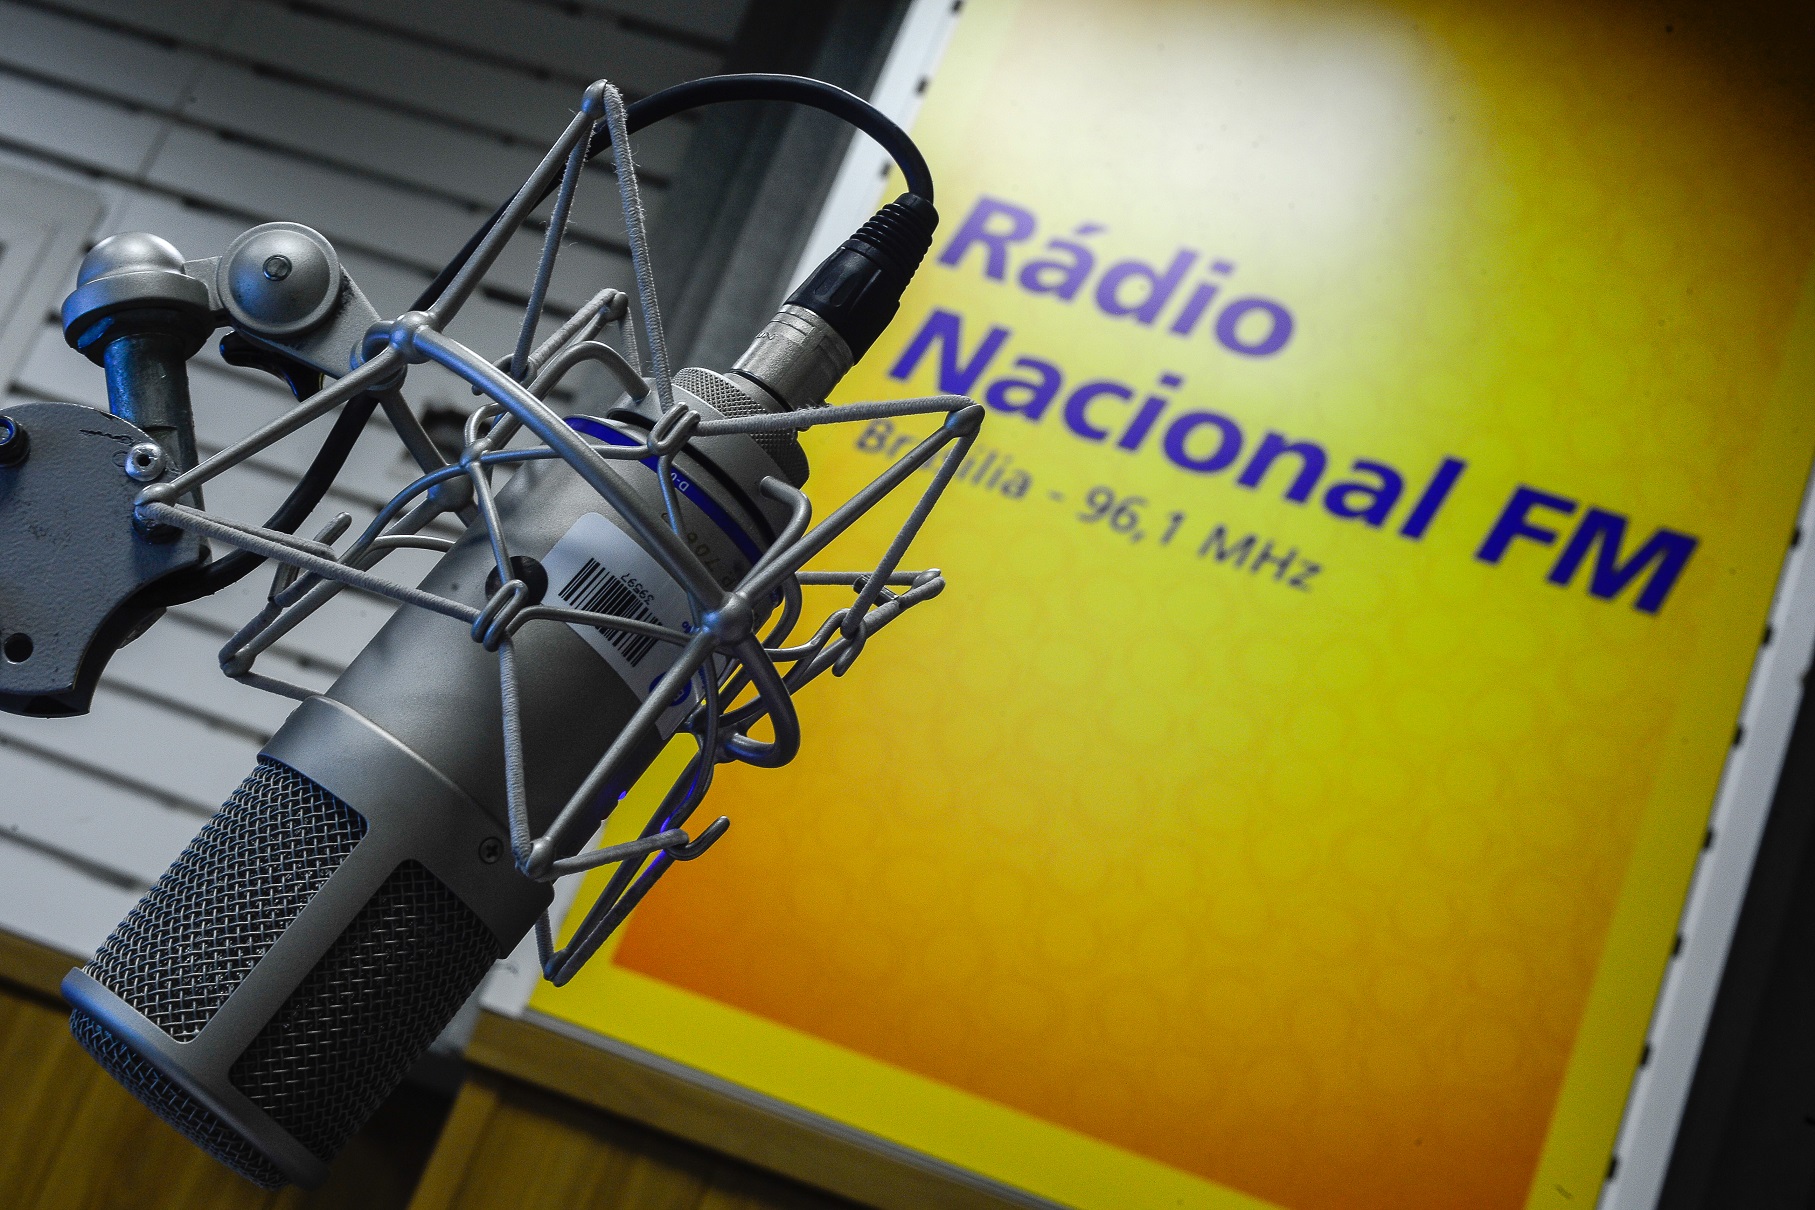 Read more about the article 96.9 FM| Rádio Nacional recebe atrações internacionais na segunda semana do ano